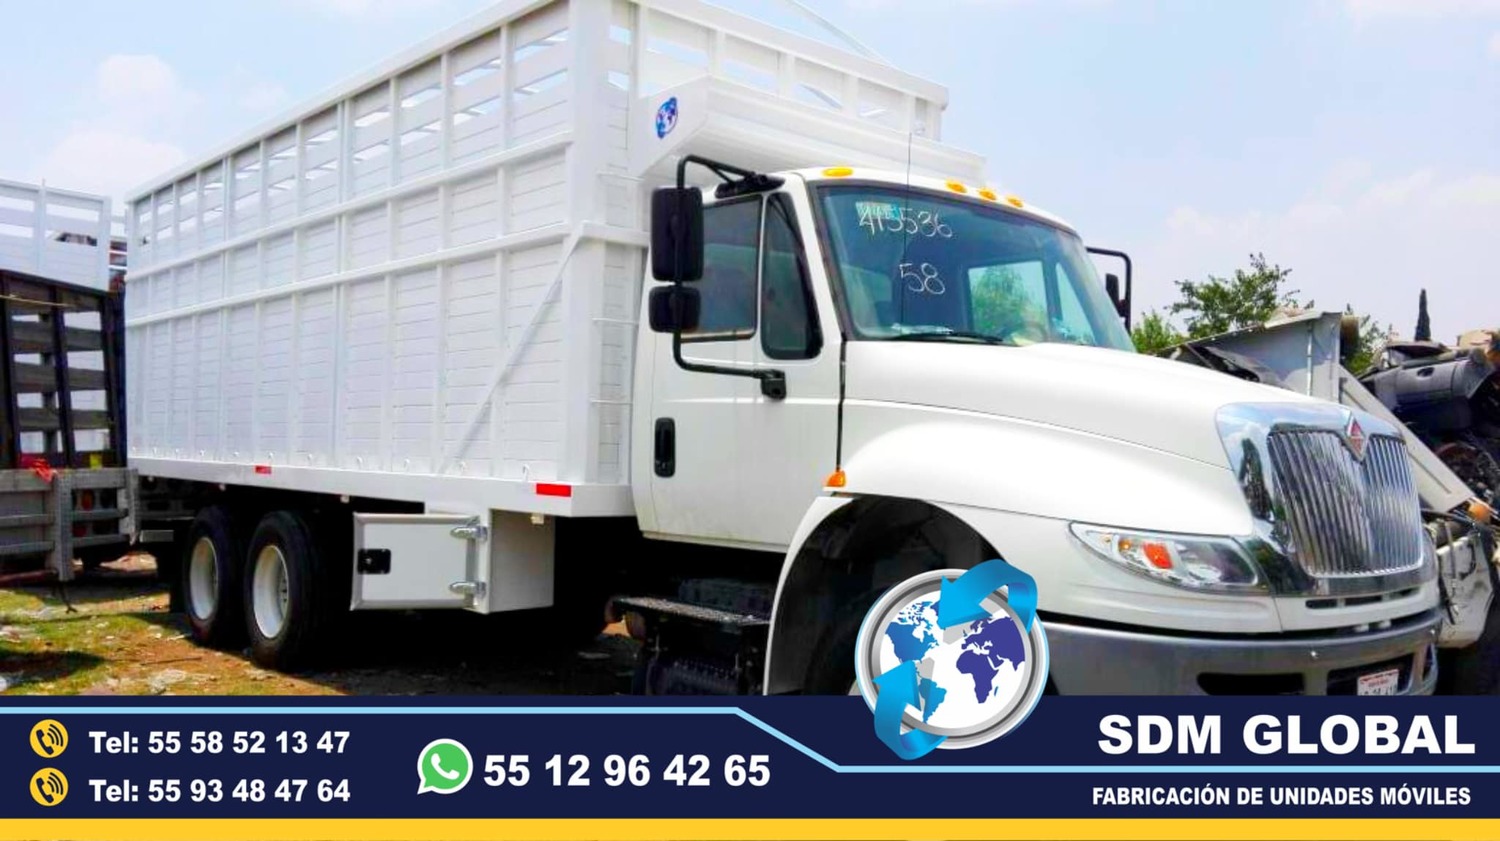 <span style="font-weight: bold;">Fabrica de Redilas o Estaquitas para camionetas y camiones</span><br>